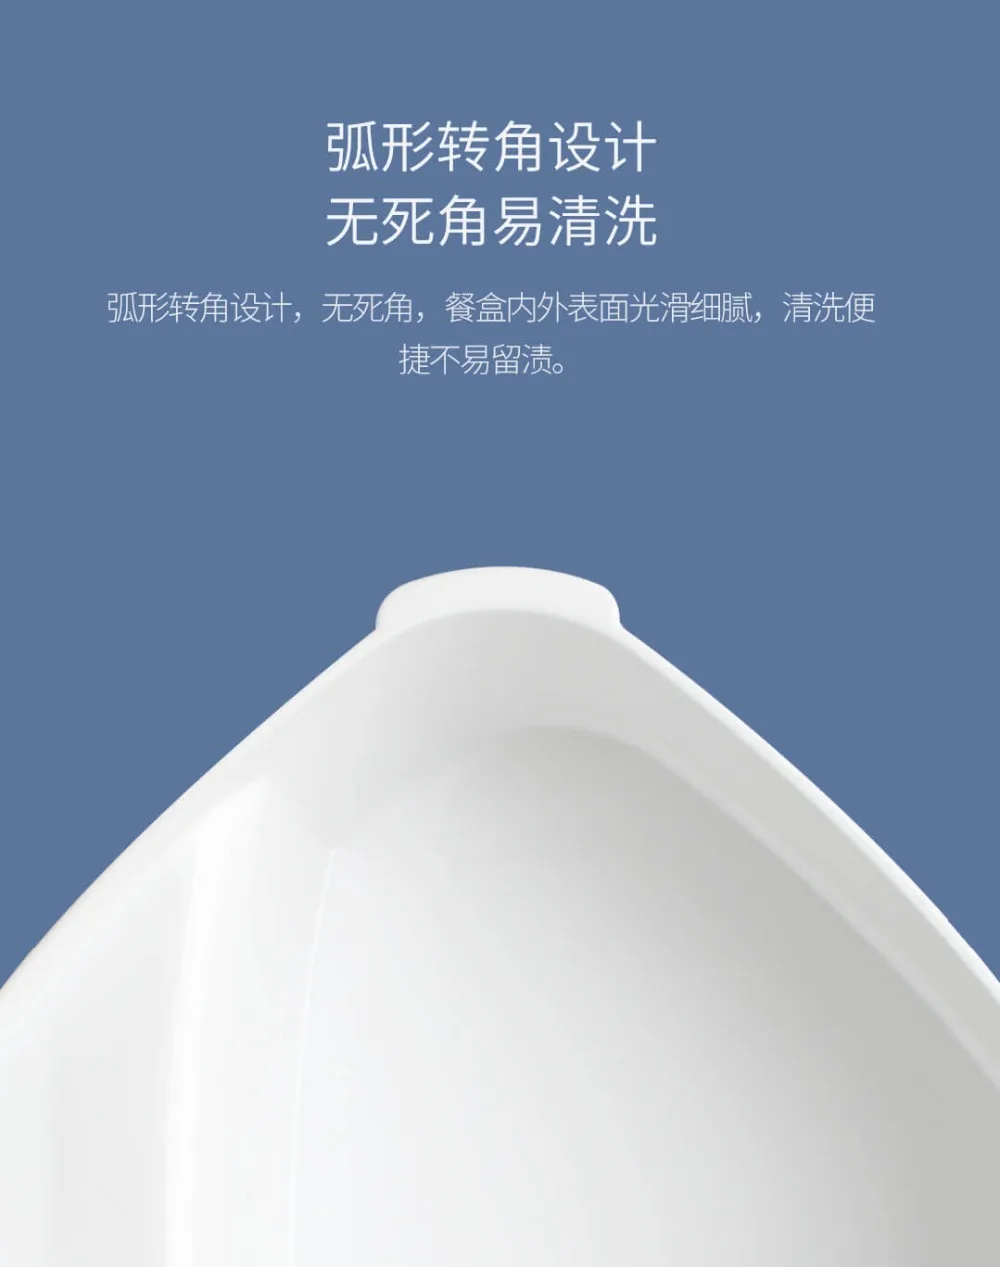 Xiaomi Youpin Kalar светильник для еды квадратная коробка экологически чистый материал светильник t и Портативный Ланч-бокс для Xiaomi Life